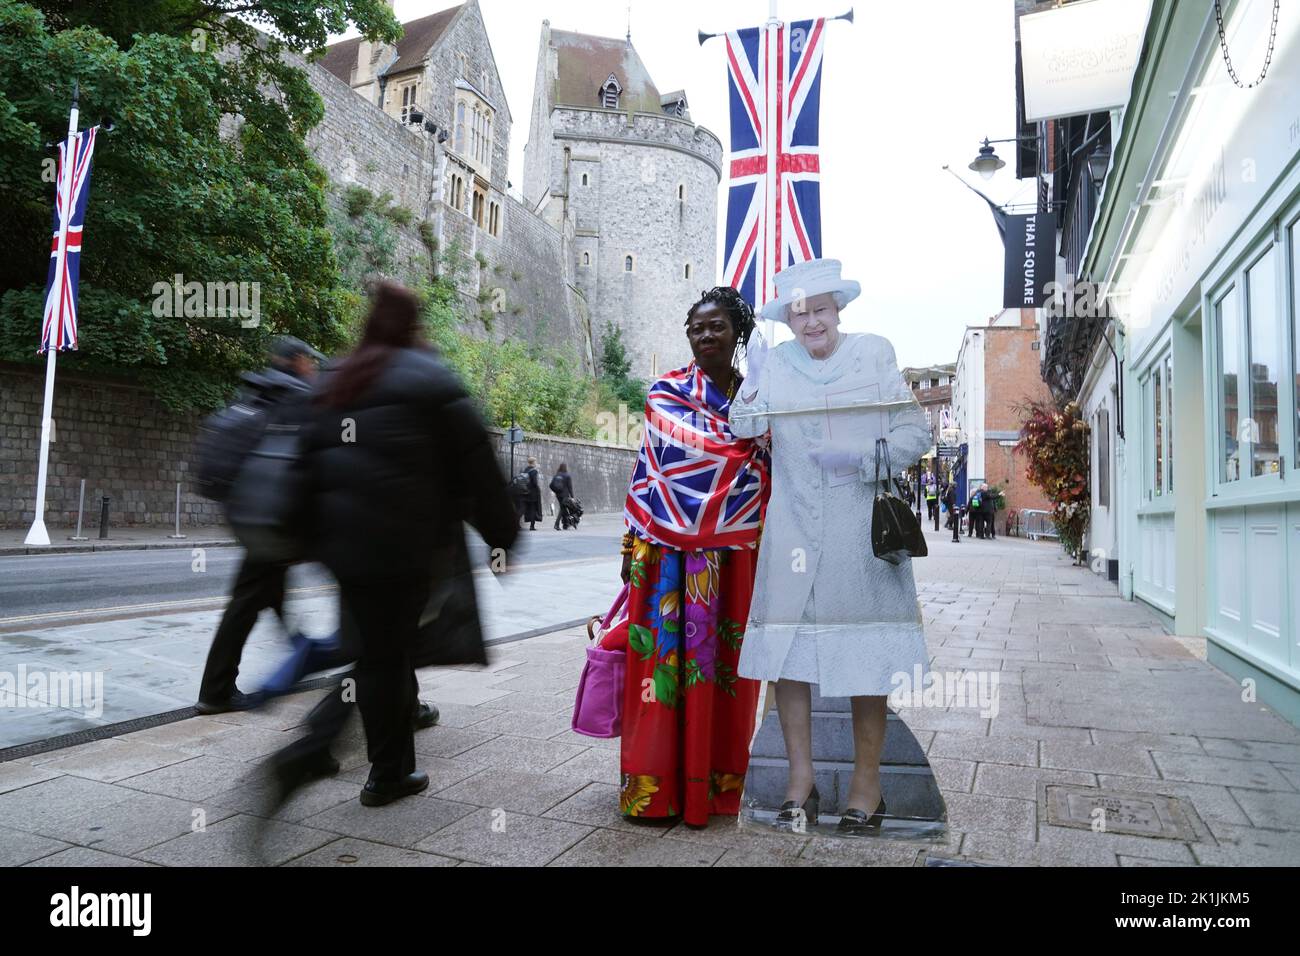 Un membre de la position publique à côté d'un carton découpé de la reine Elizabeth II à Windsor, dans le Berkshire, devant les funérailles d'État de la reine Elizabeth II, lundi. Date de la photo: Lundi 19 septembre 2022. Banque D'Images